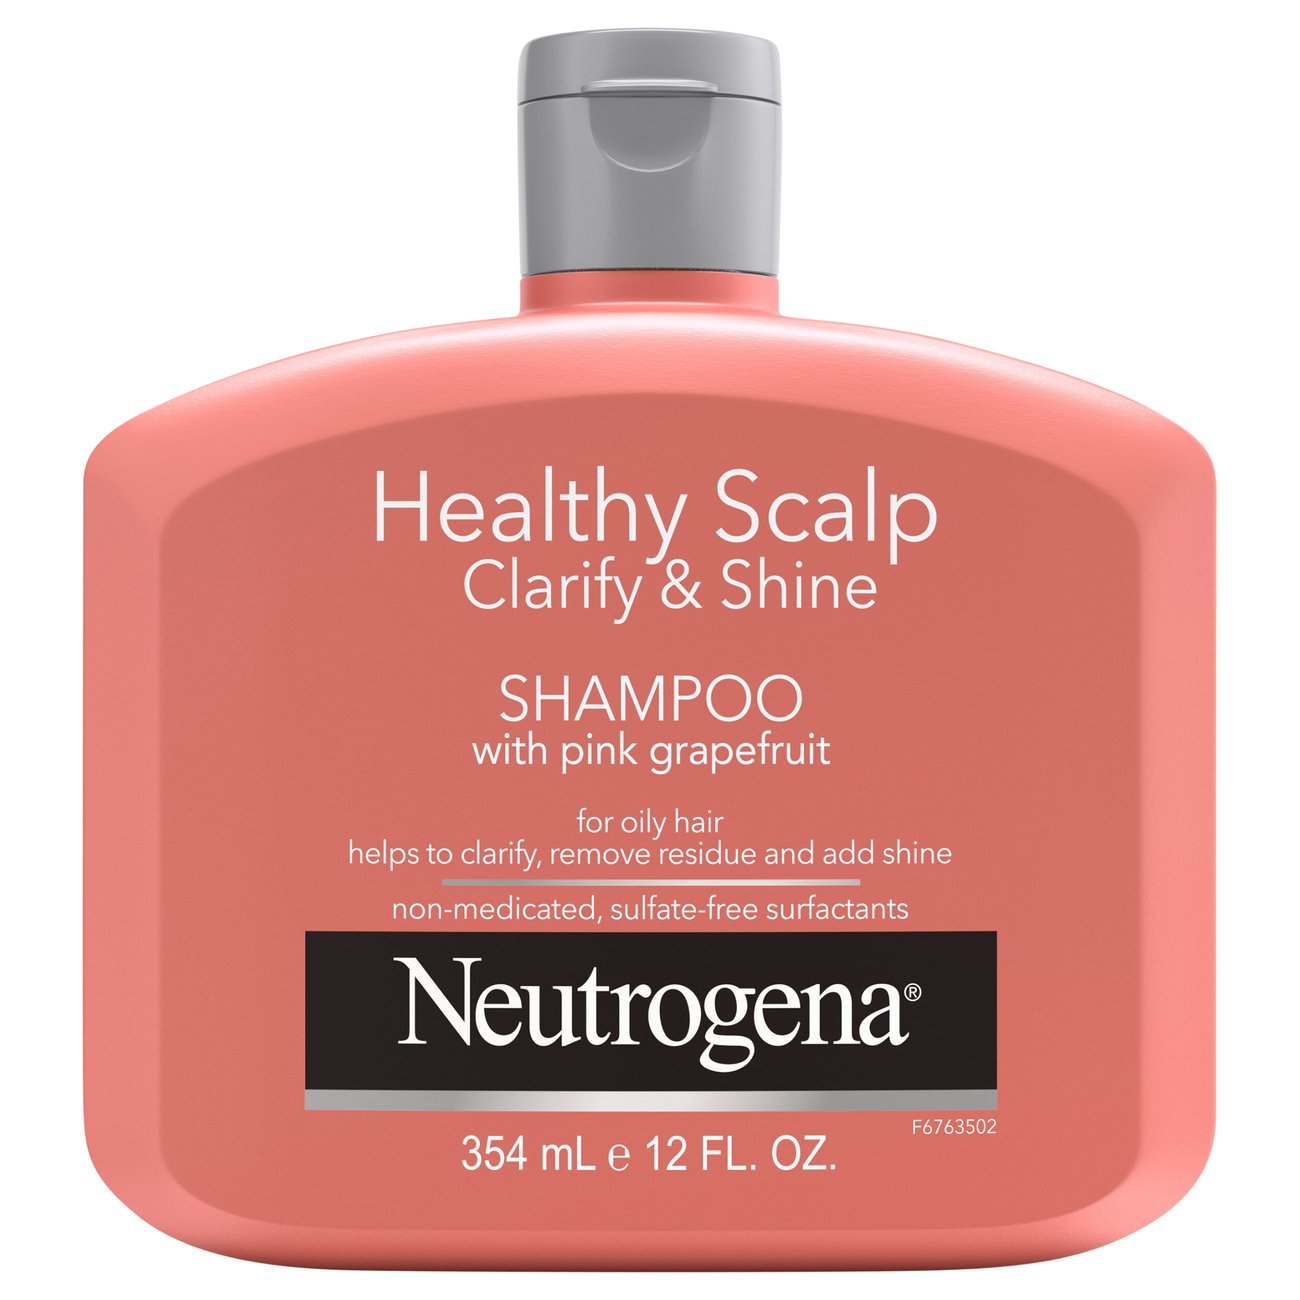 Scalp Clarify & Shine Shampoo with Pink Grapefruit - Shop Shampoo & Conditioner at H-E-B